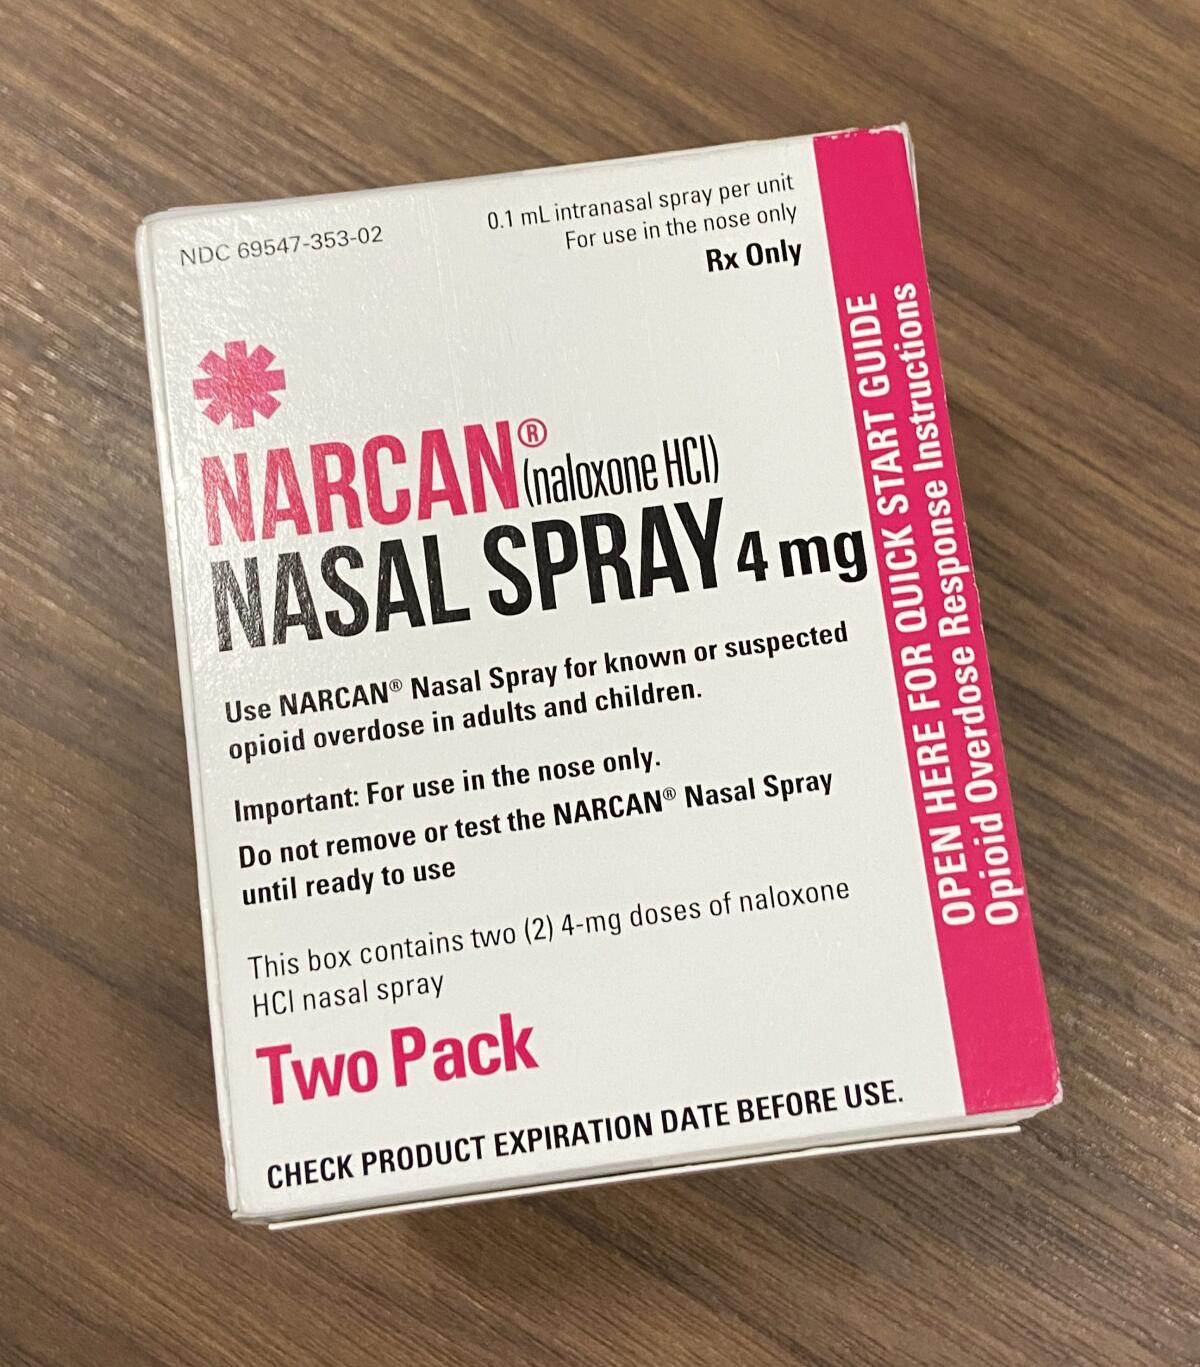 Package of overdose-reversing drug Narcan